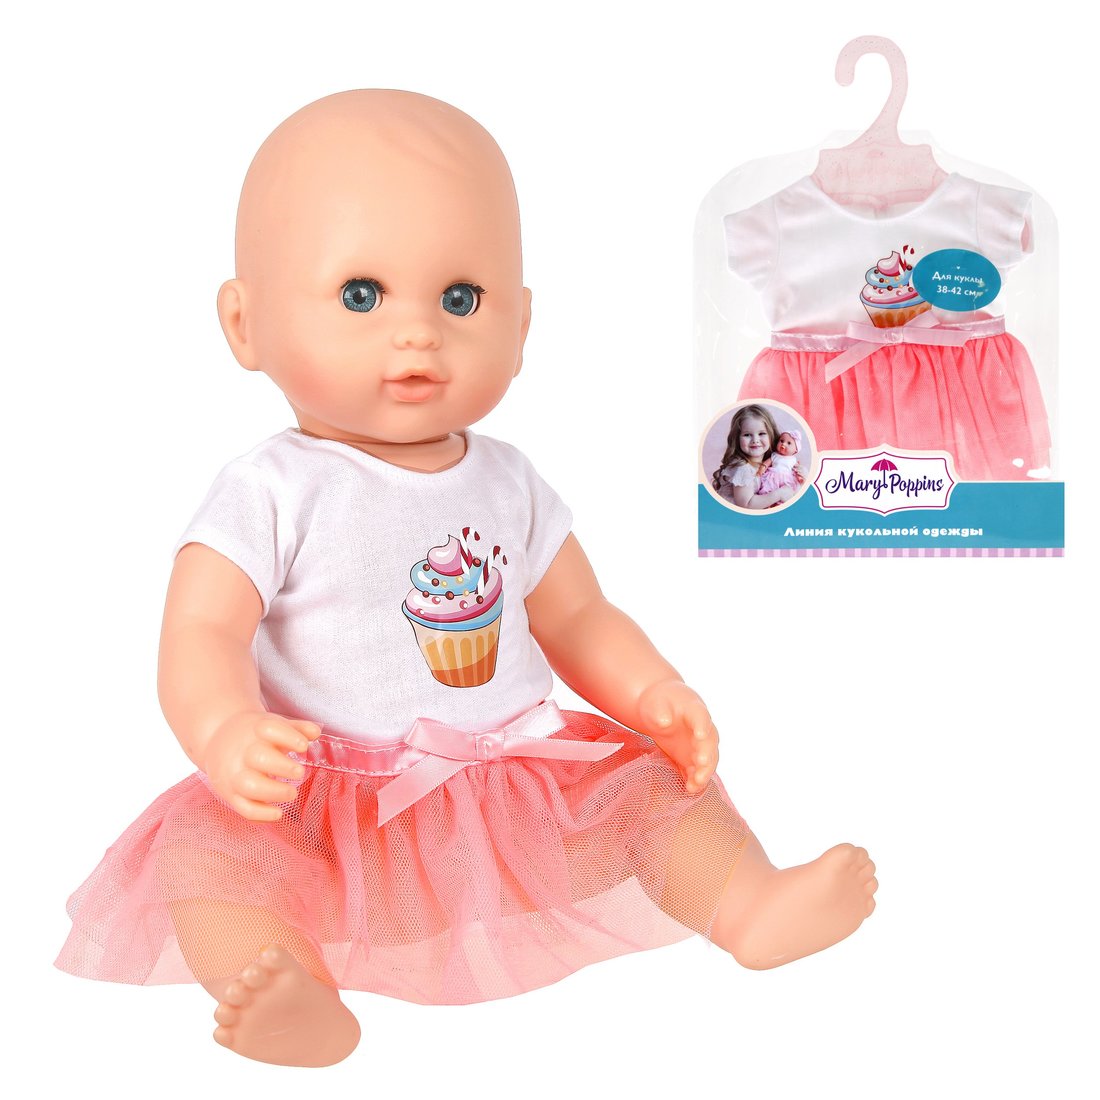 Одежда для куклы 38-43см, футболка и юбочка "Пирожное" - изображение 1